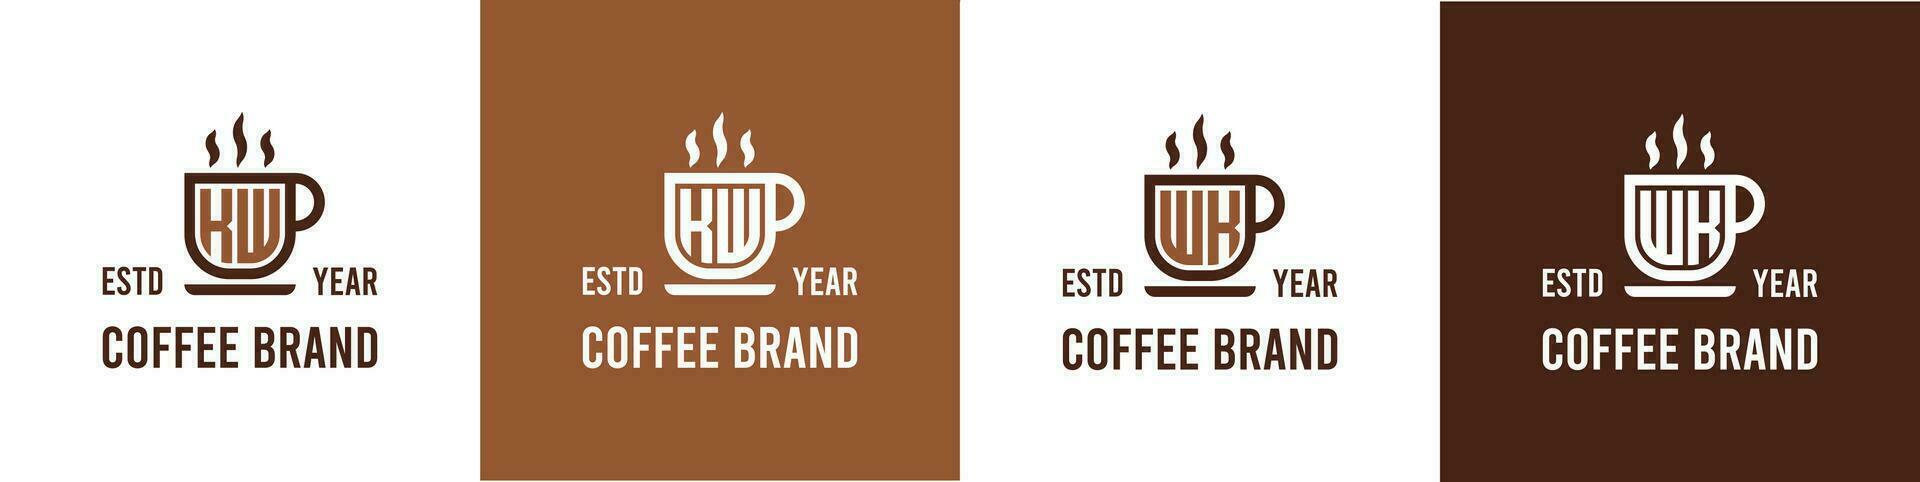 letra kw y semana café logo, adecuado para ninguna negocio relacionado a café, té, o otro con kw o semana iniciales. vector